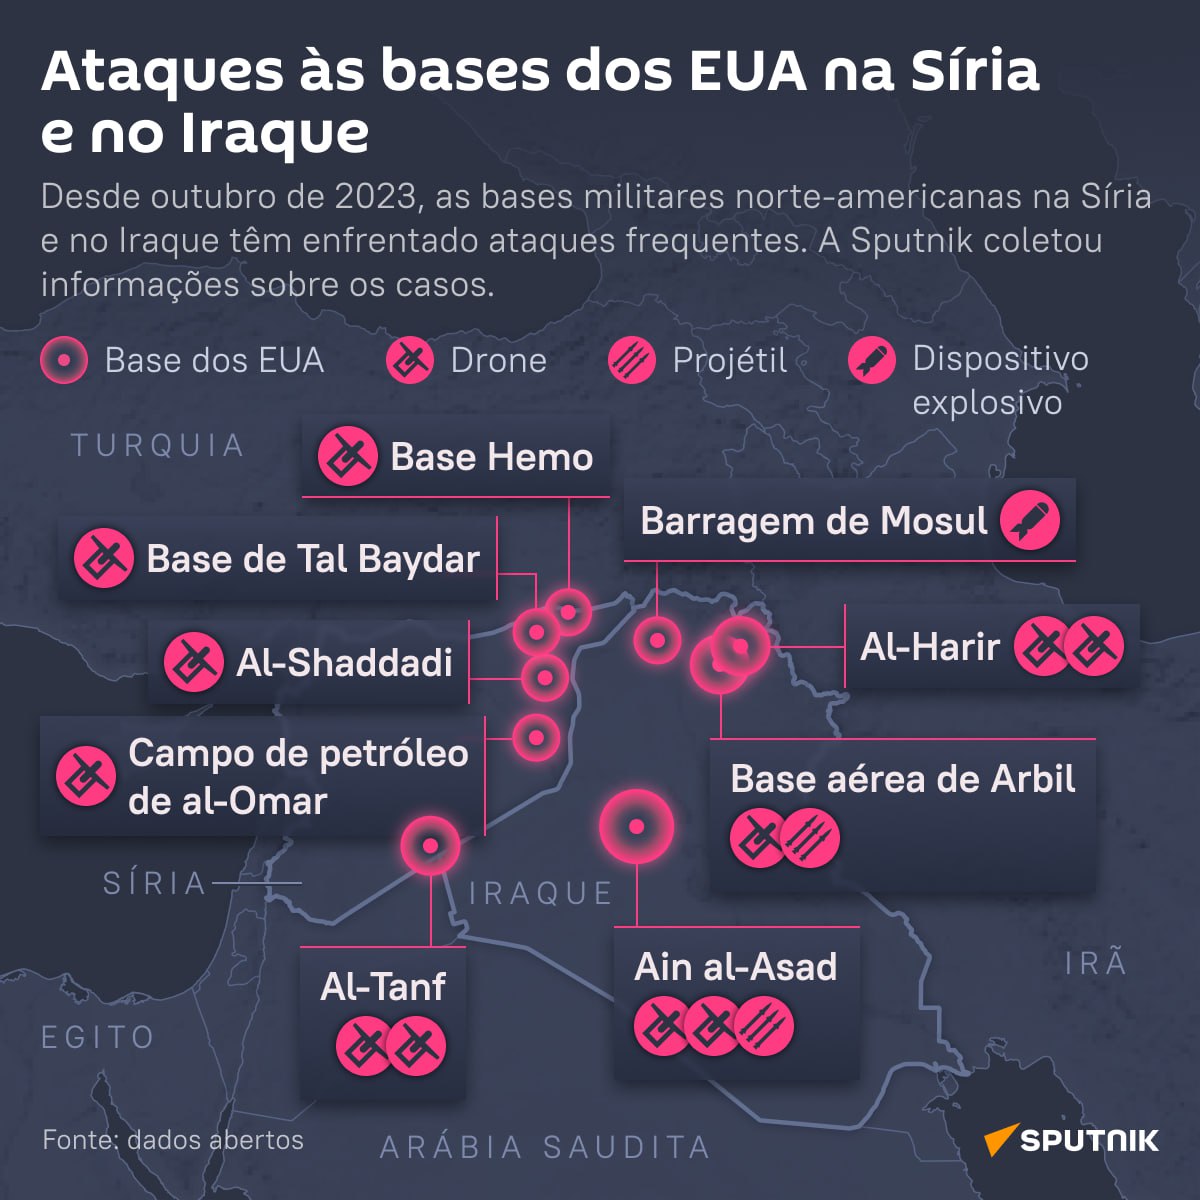 Pentágono confirma deslocamento de 900 soldados para o Oriente Médio -  26.10.2023, Sputnik Brasil